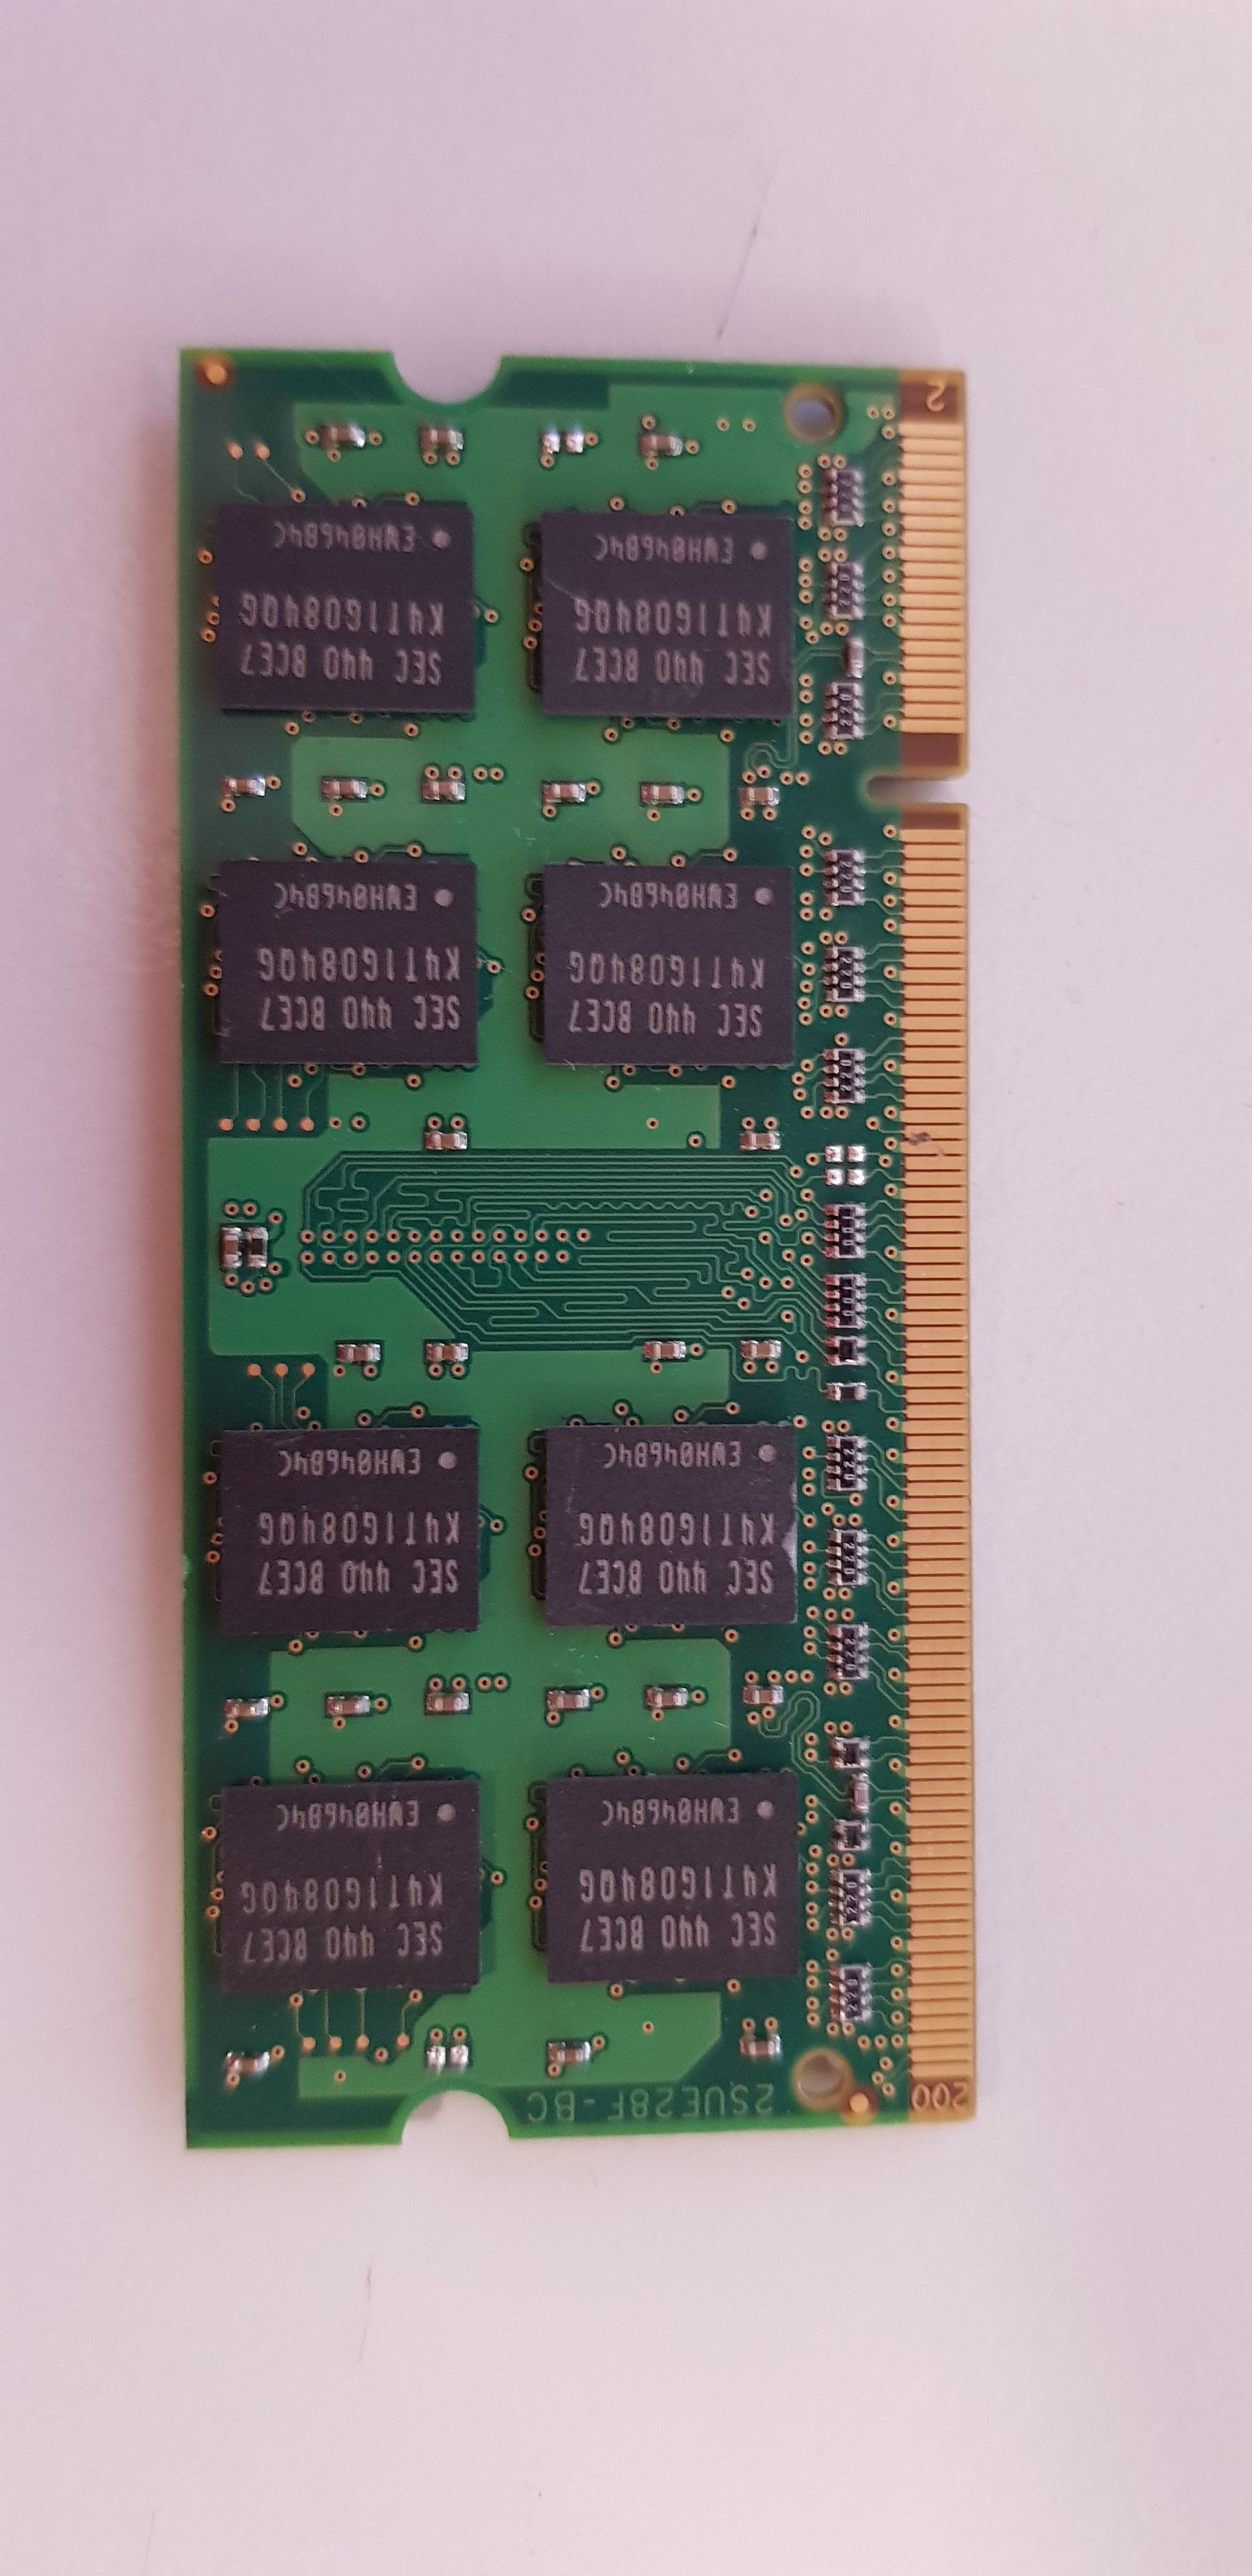 Buffalo 2GB 2Rx8 533MHz CL4 NonECC Unbuffered DDR2 SDRAM Memory Module (D2N533B-2GSGJ8)